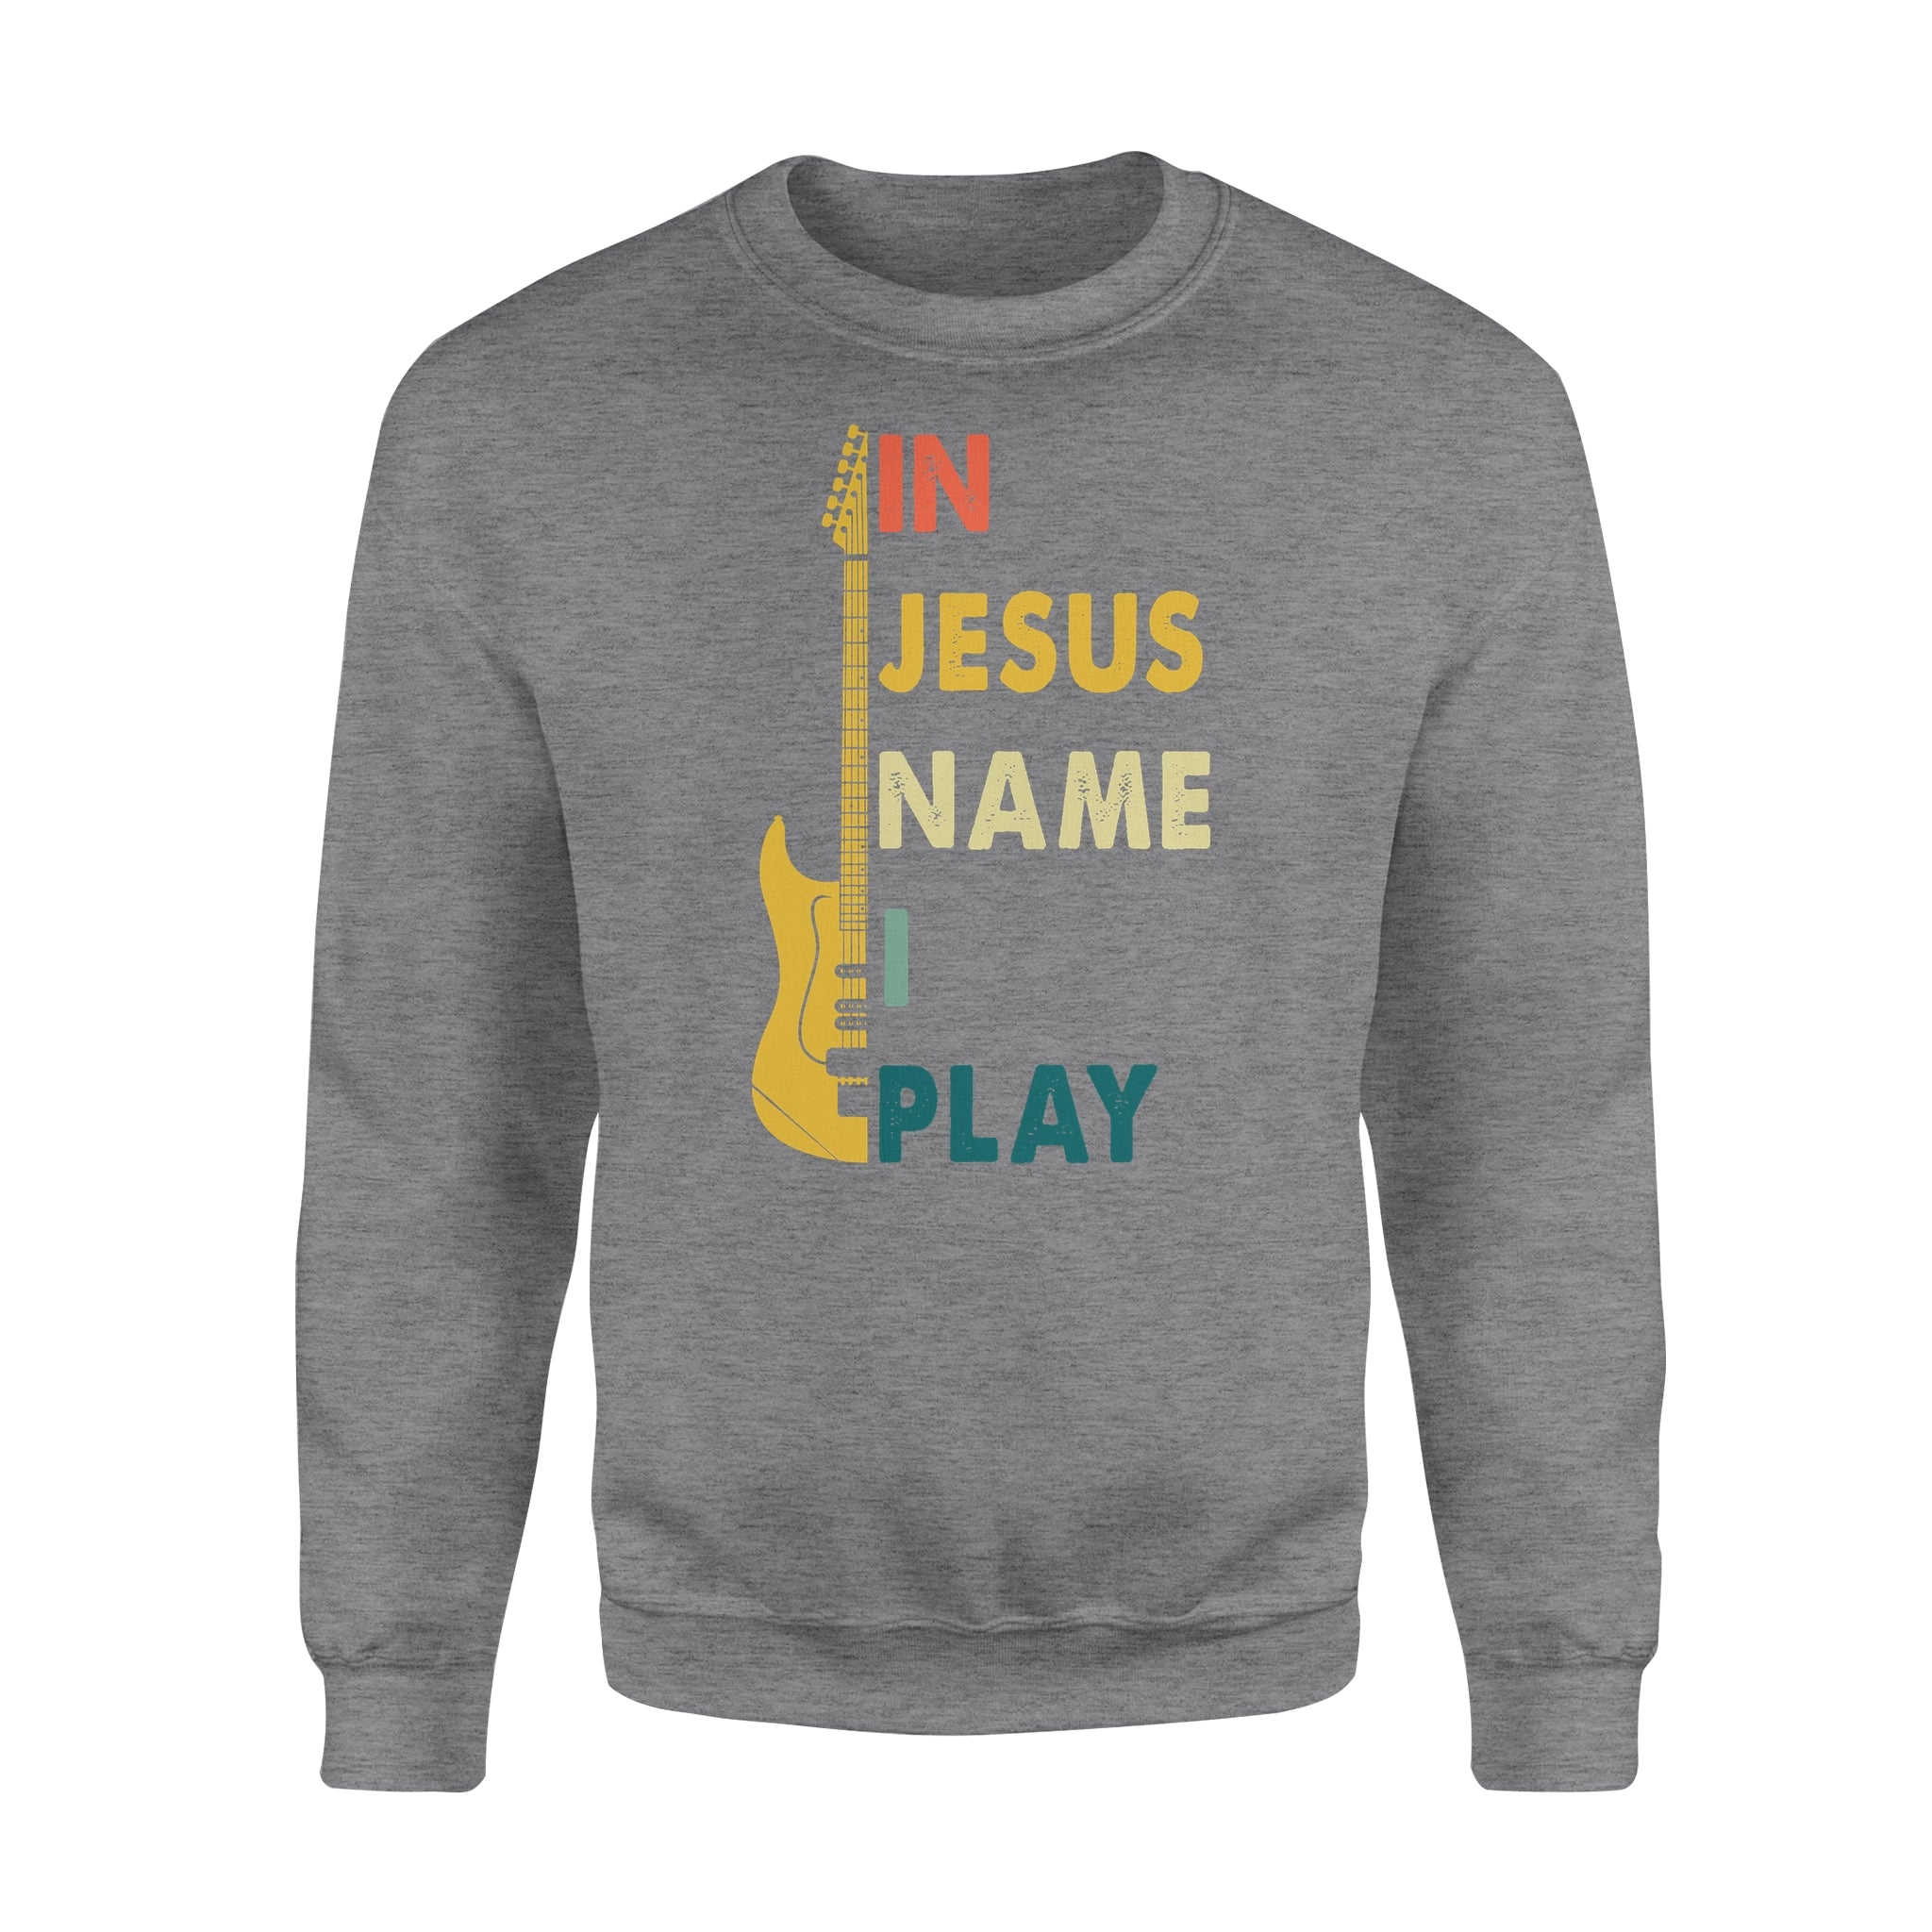 Hooby GIft Idea - In Jesus Name I Play Guitar - Standard Crew Neck Sweatshirt